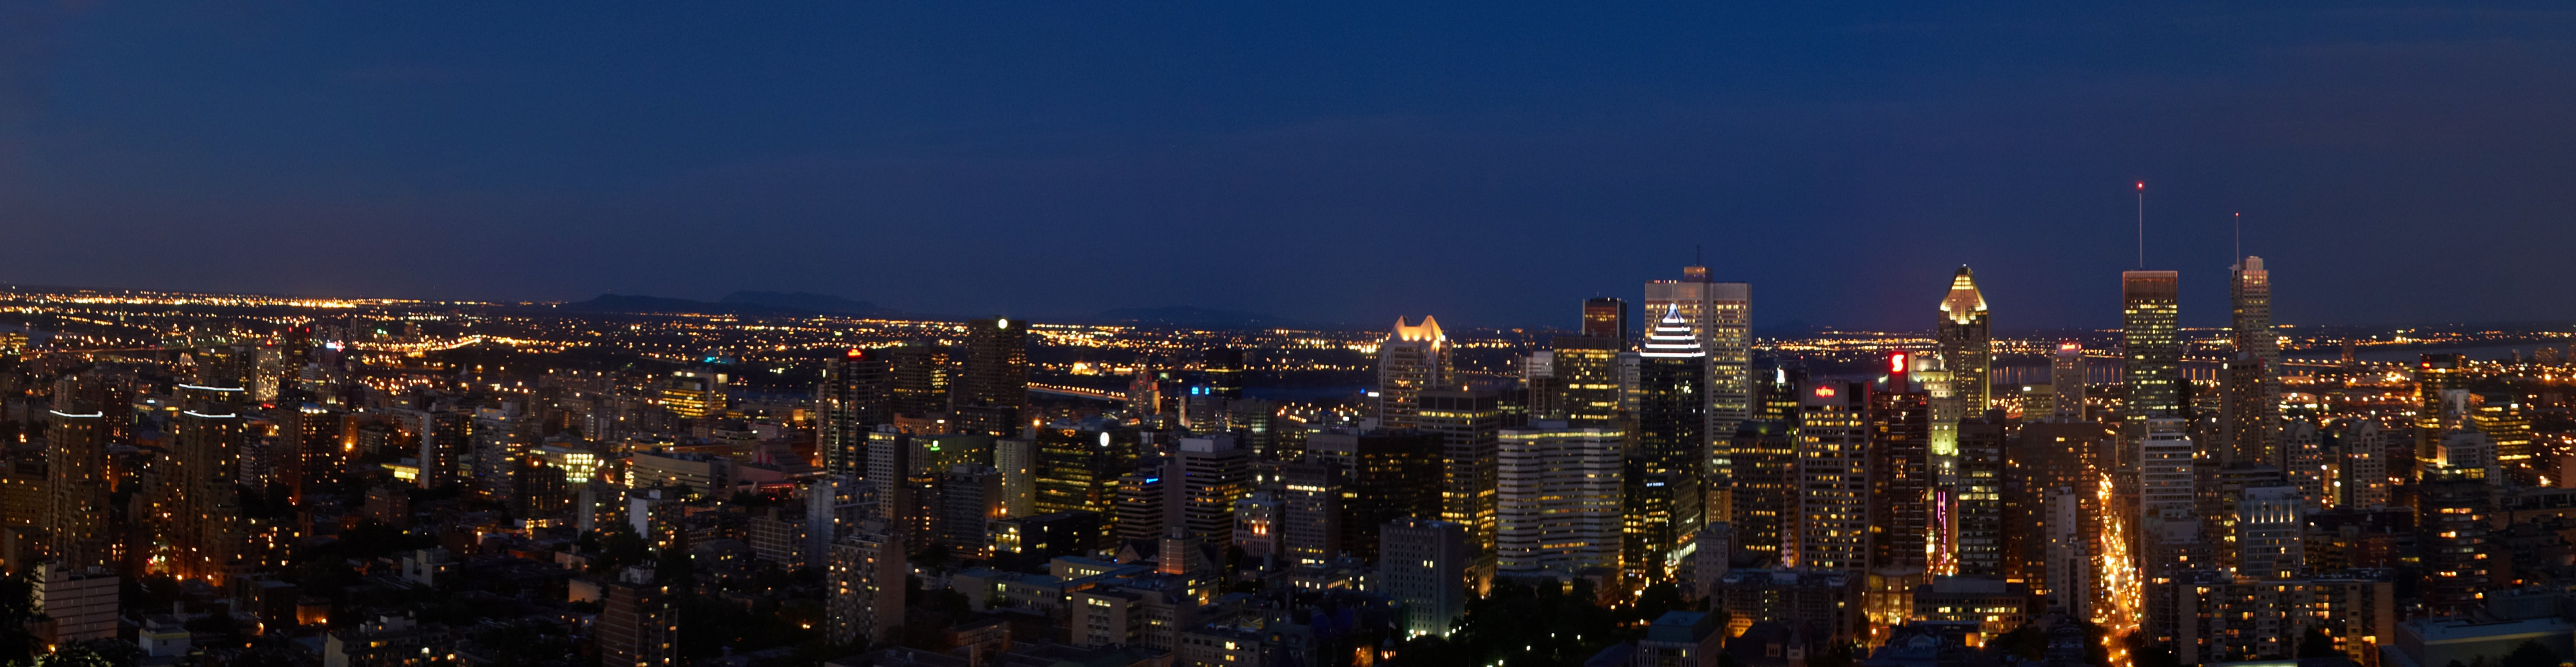 モントリオールの夜の街の写真